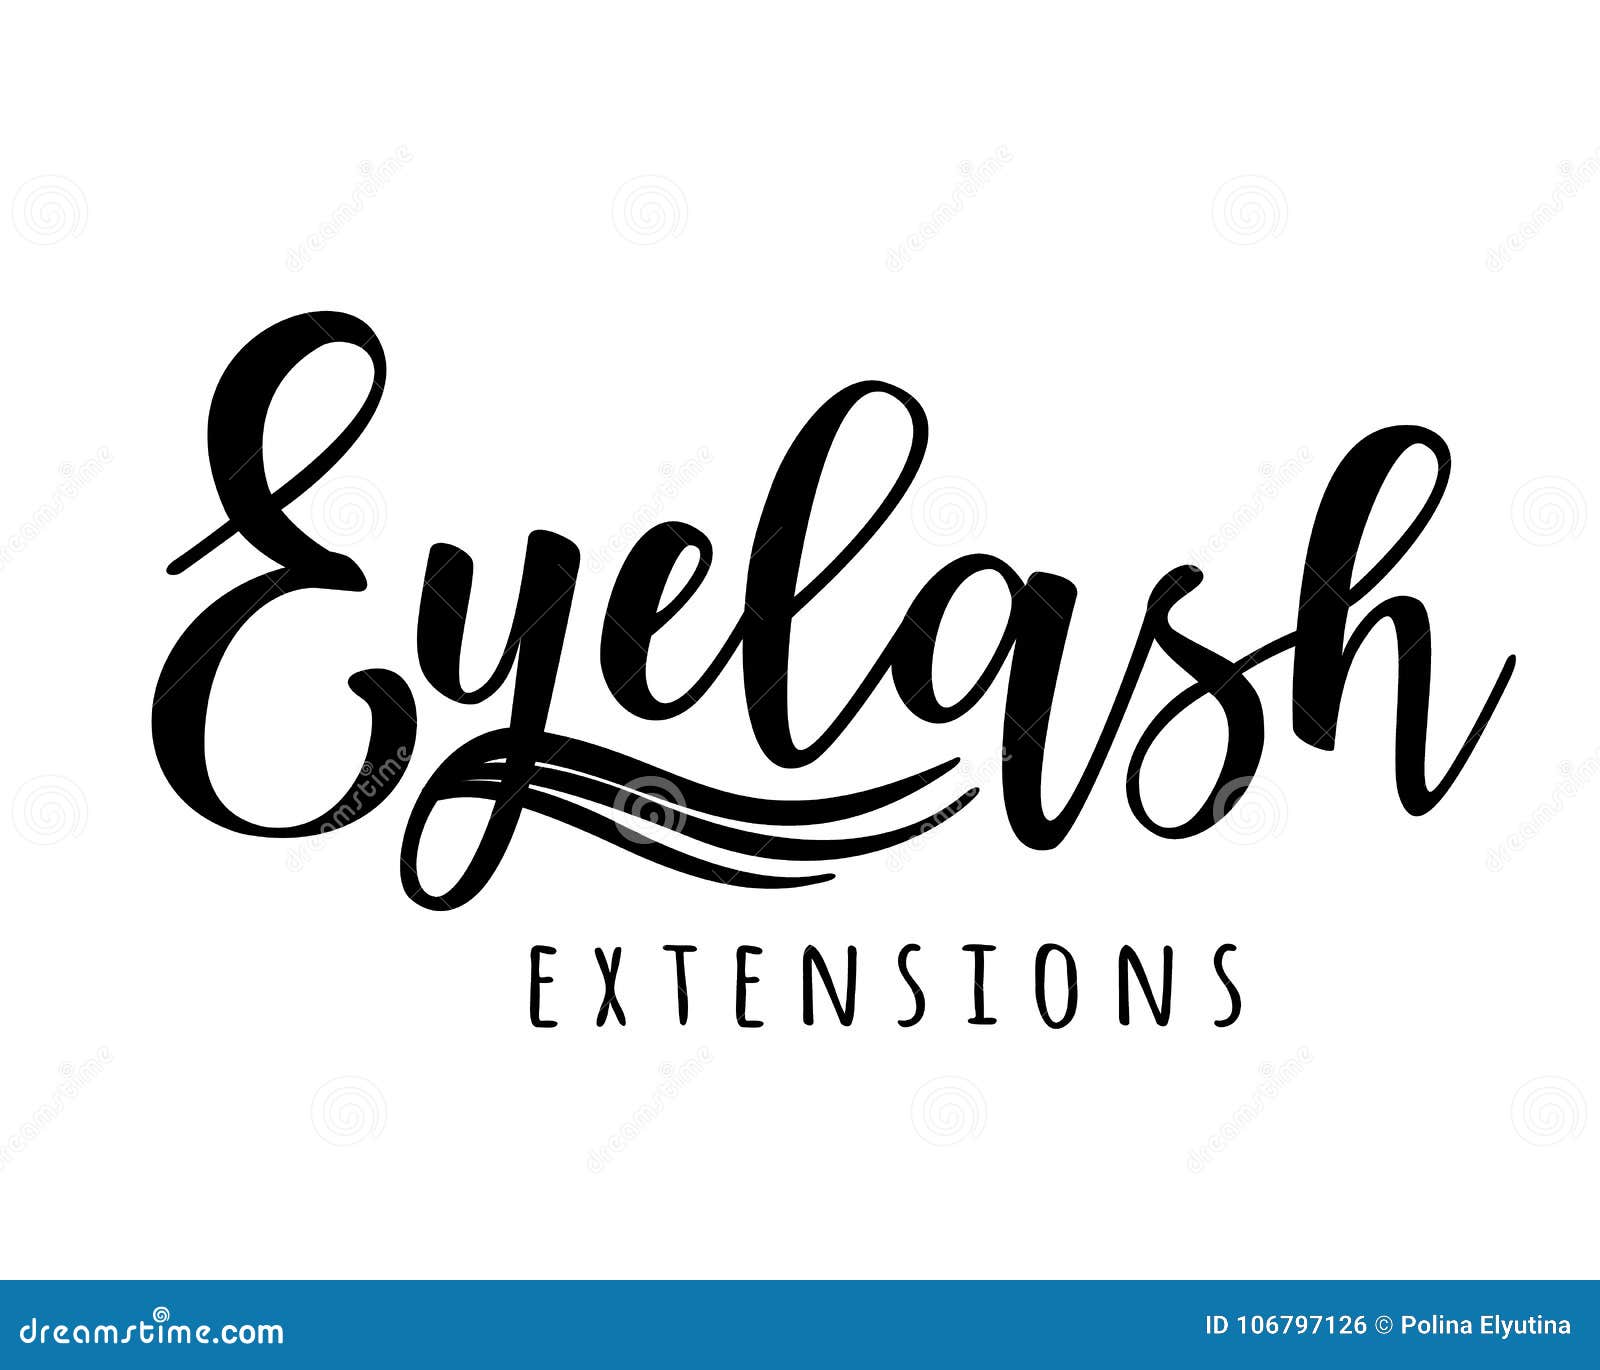 eyelash extension logo